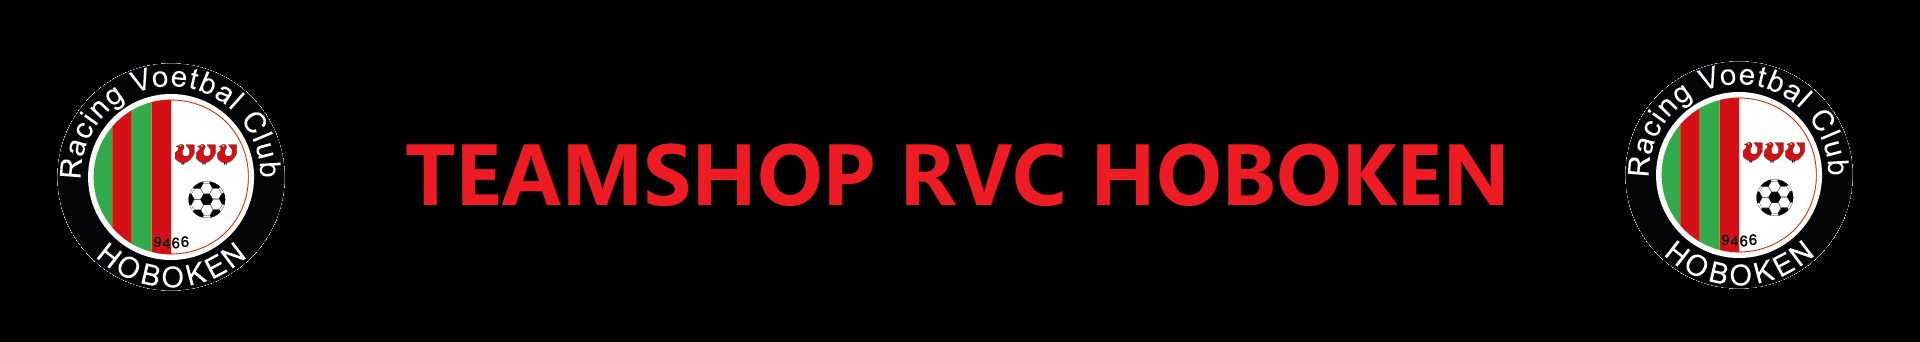 RVC Hoboken Title Image